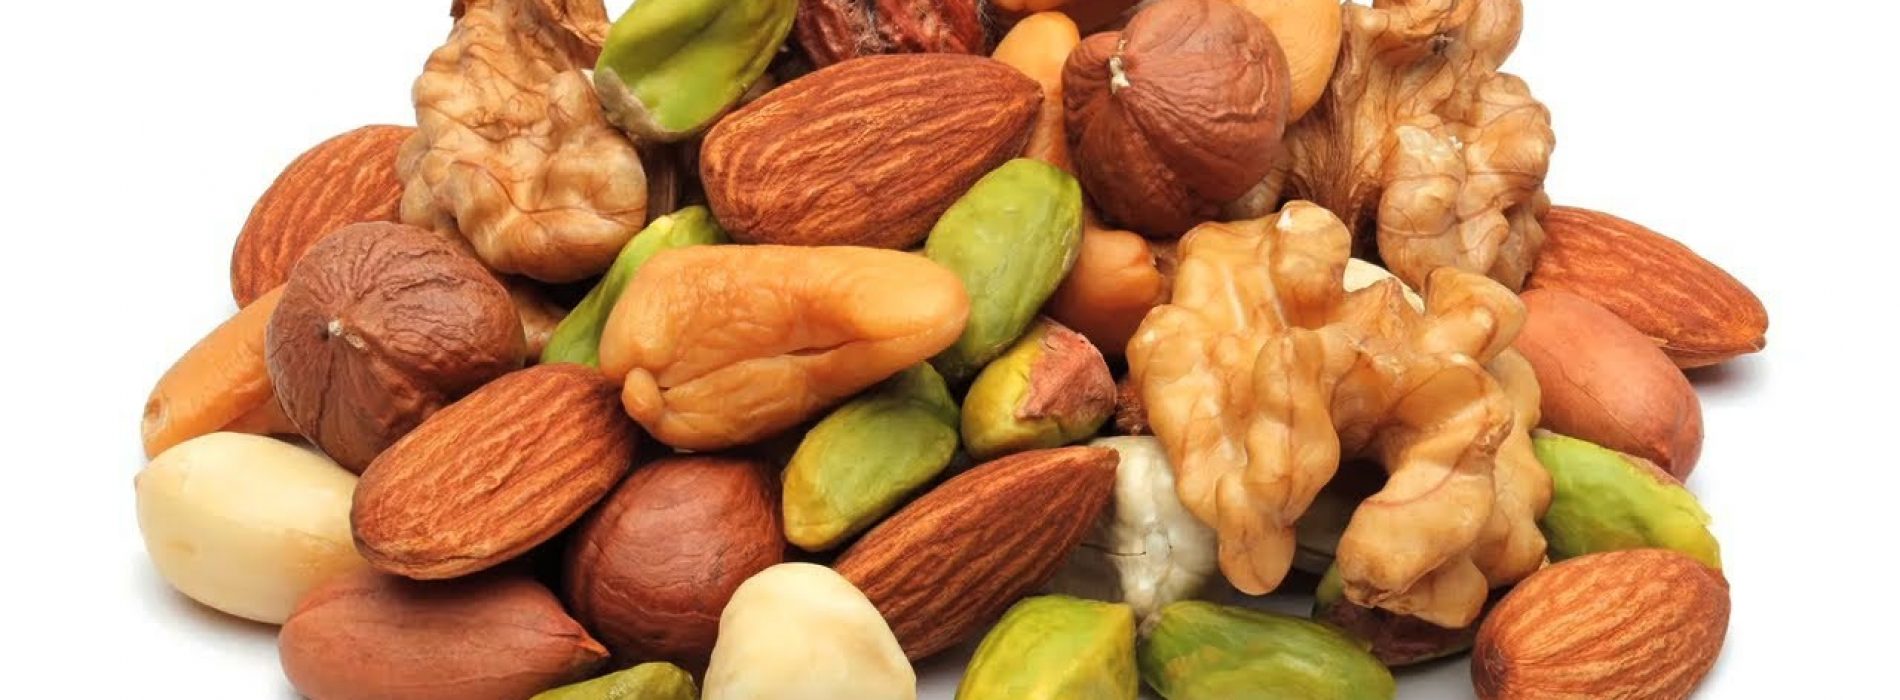 Waarom je noten & zaden moet weken en hoe dat op de juiste manier te doen!